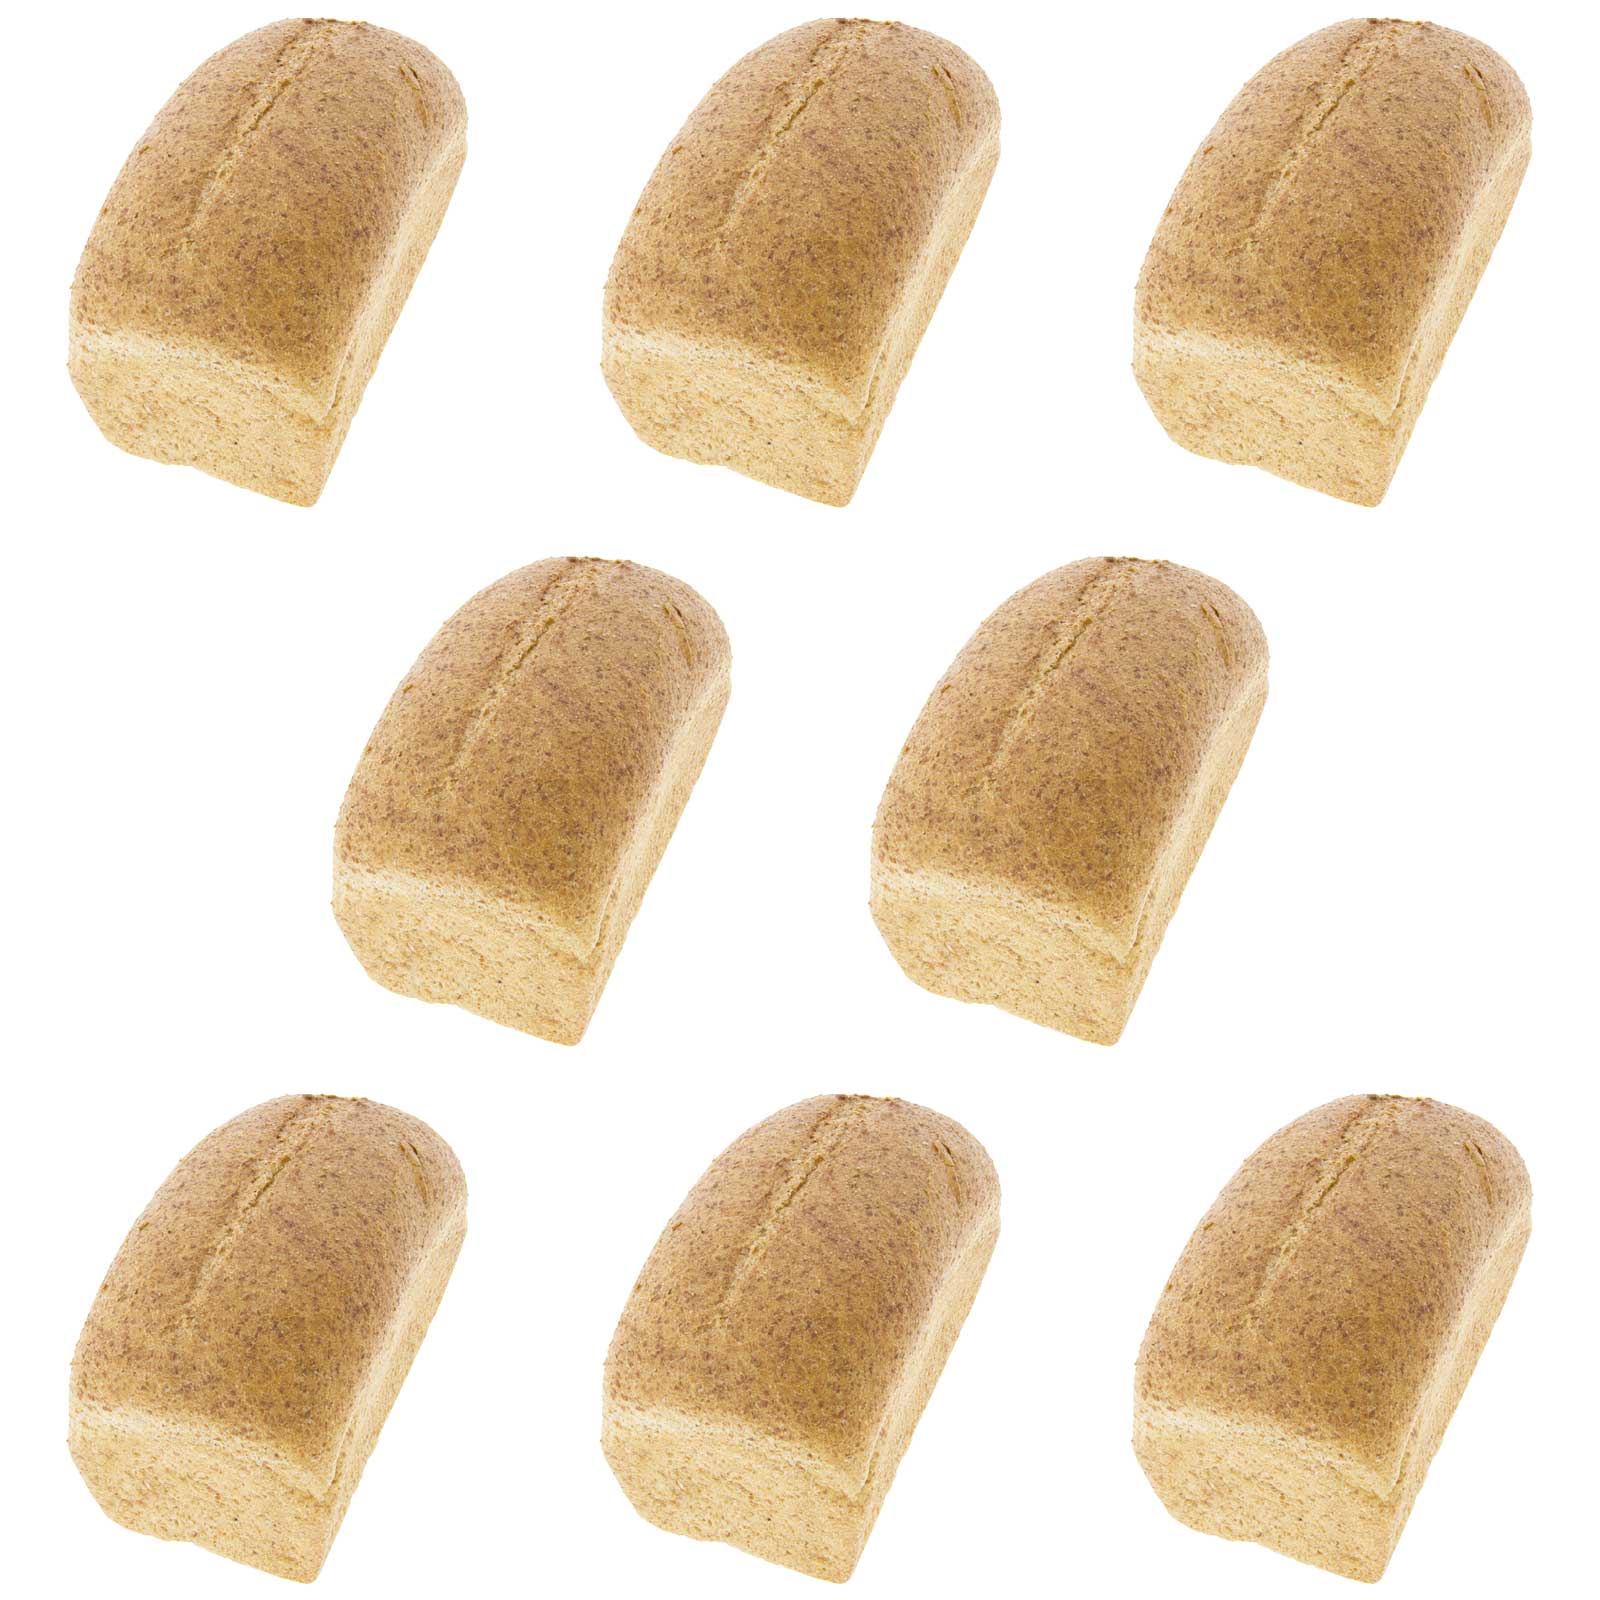 Pão de Espelta Integral SEM SAL (PACK 8 unidades x 400g) 3,2Kg (sem cortes)